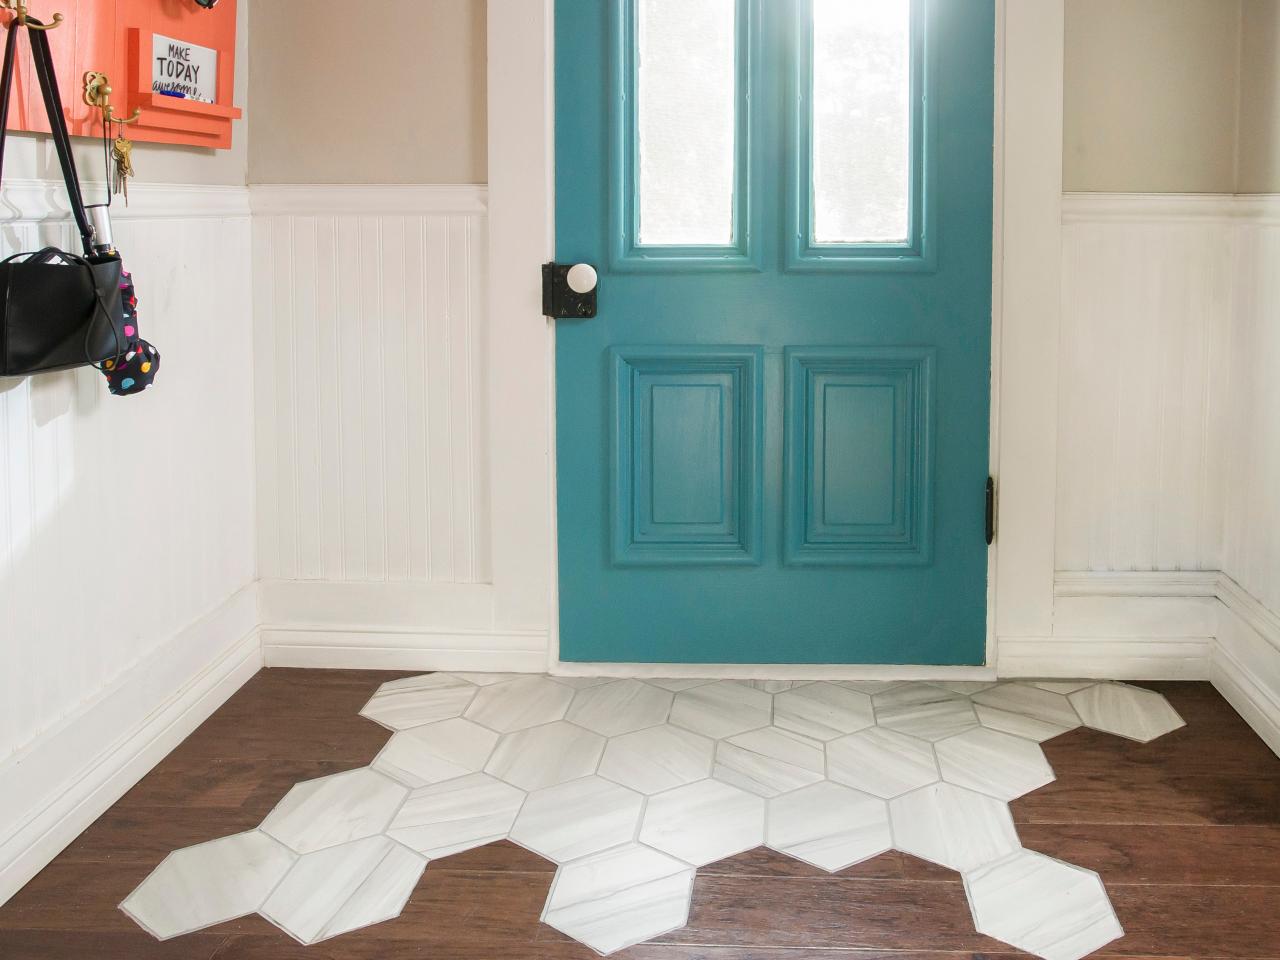 A Tile Rug Within Hardwood Floor, Hardwood Floor Accents